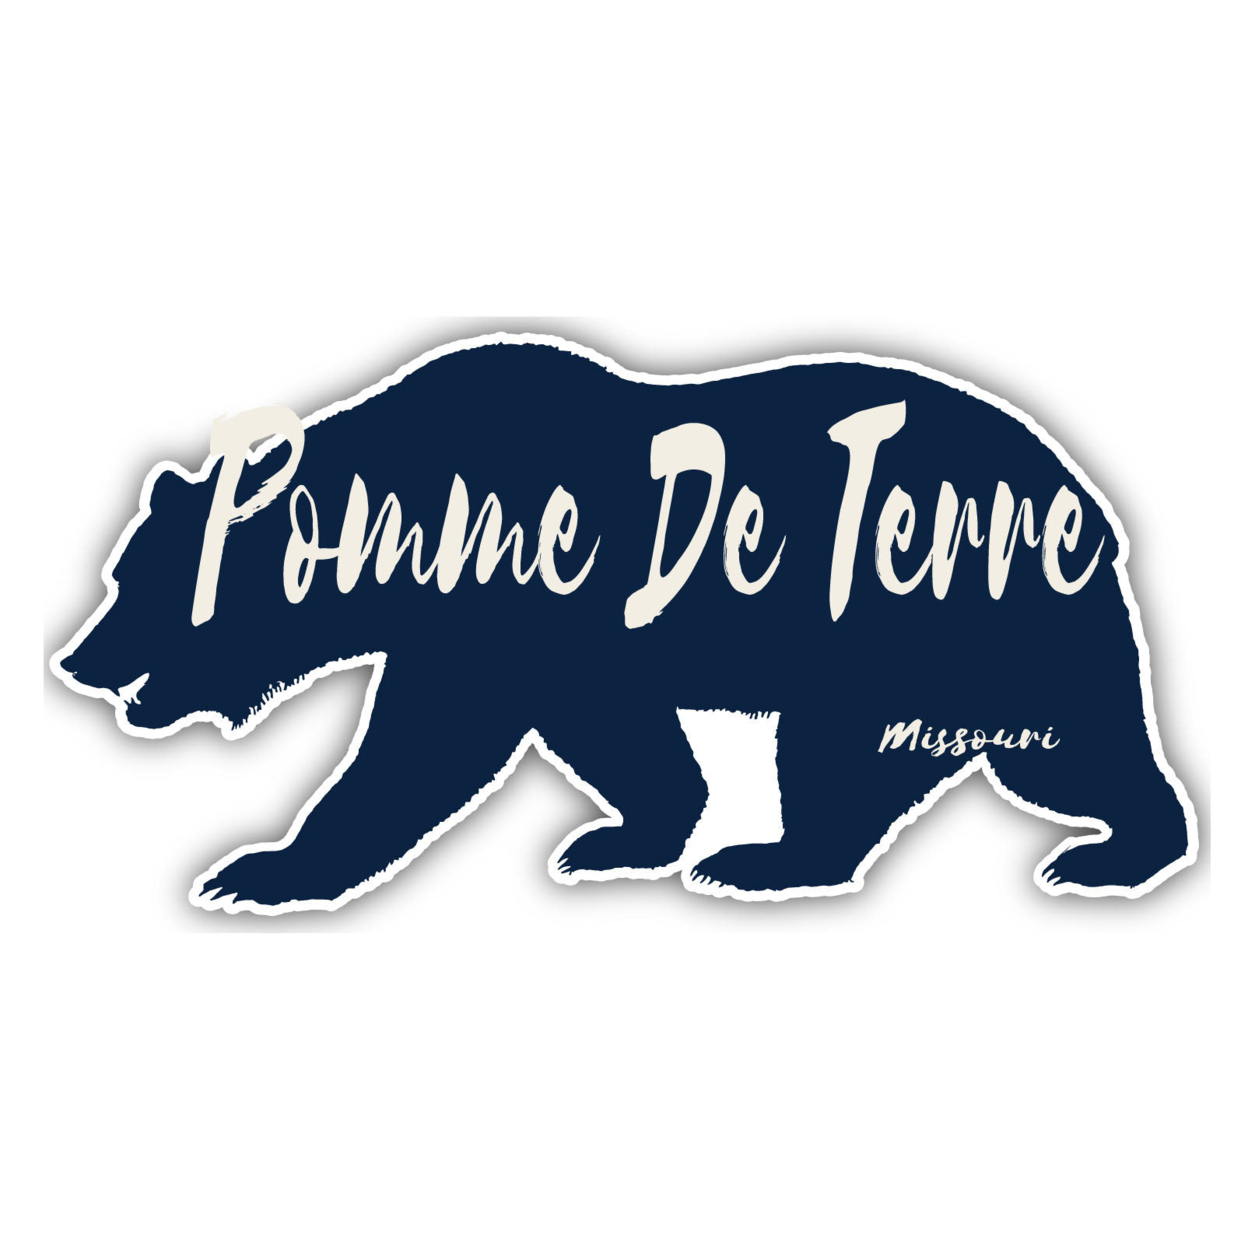 Pomme De Terre Missouri Souvenir Decorative Stickers (Choose Theme And Size) - Single Unit, 2-Inch, Bear